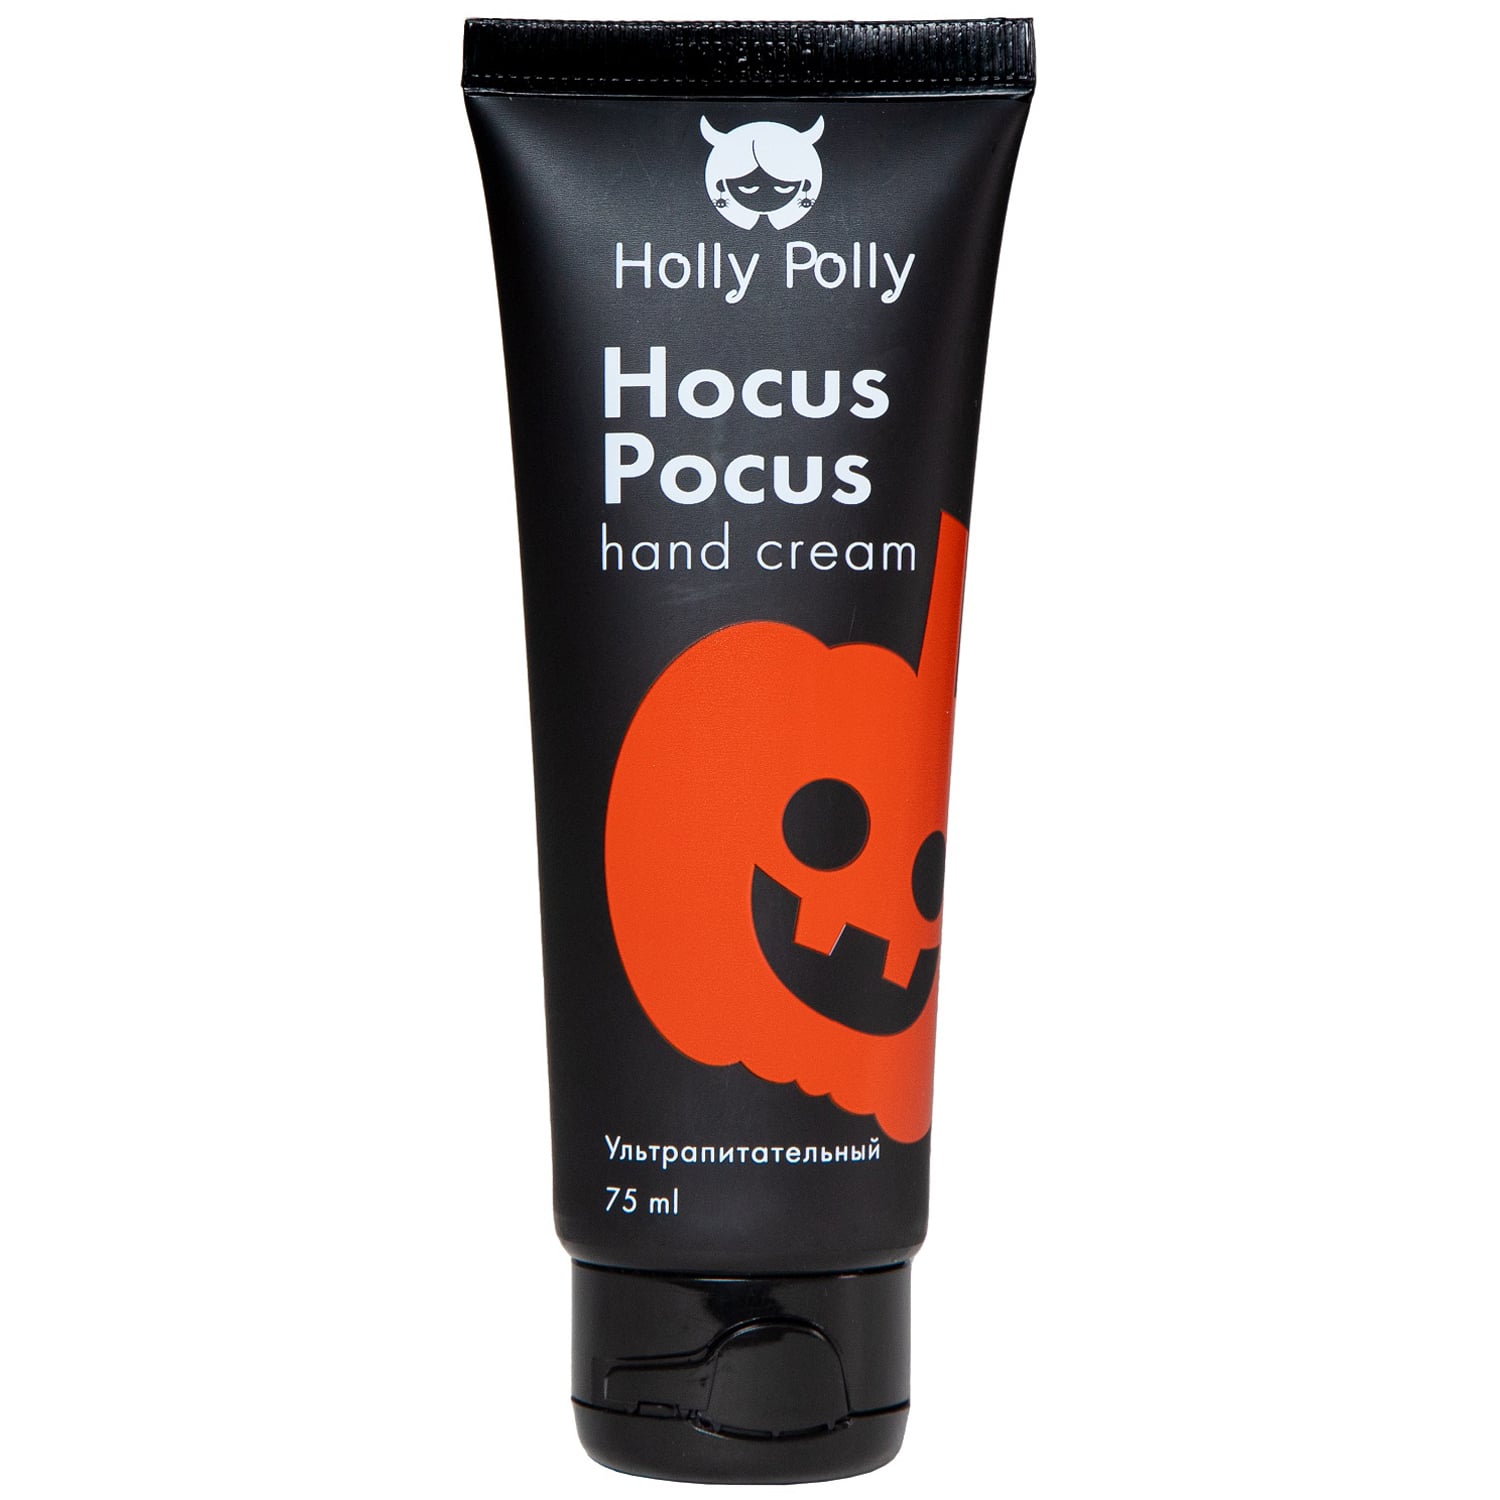 Holly Polly Ультрапитательный крем для рук Hocus Pocus, 75 мл (Holly Polly, Hollyween)